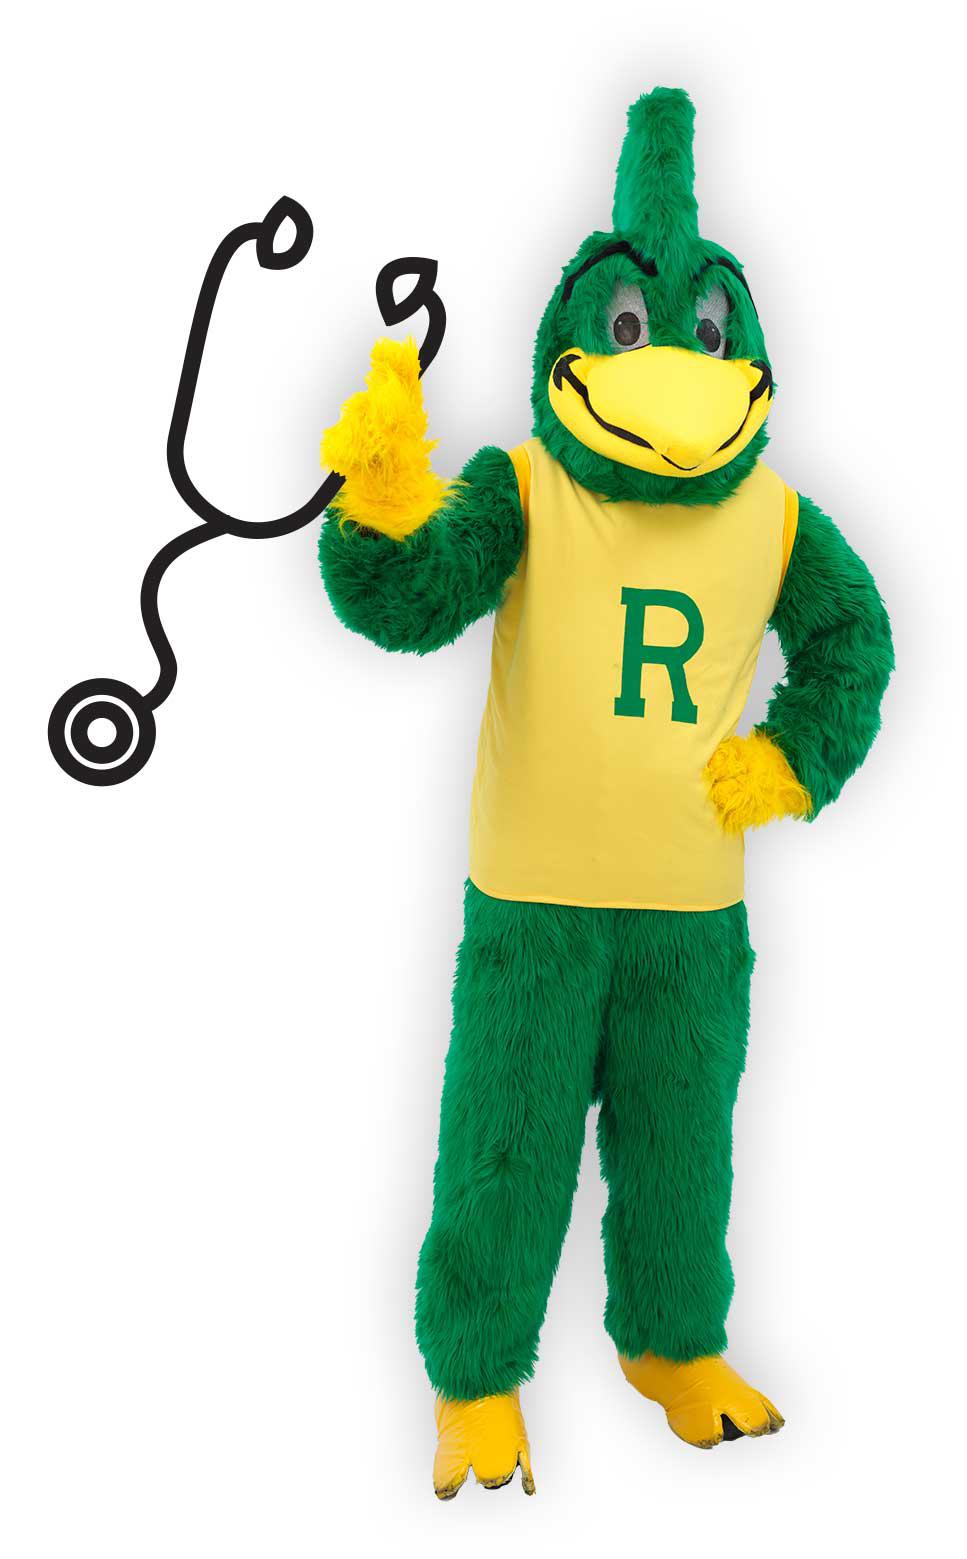 Roadrunner mascot holding stethescope